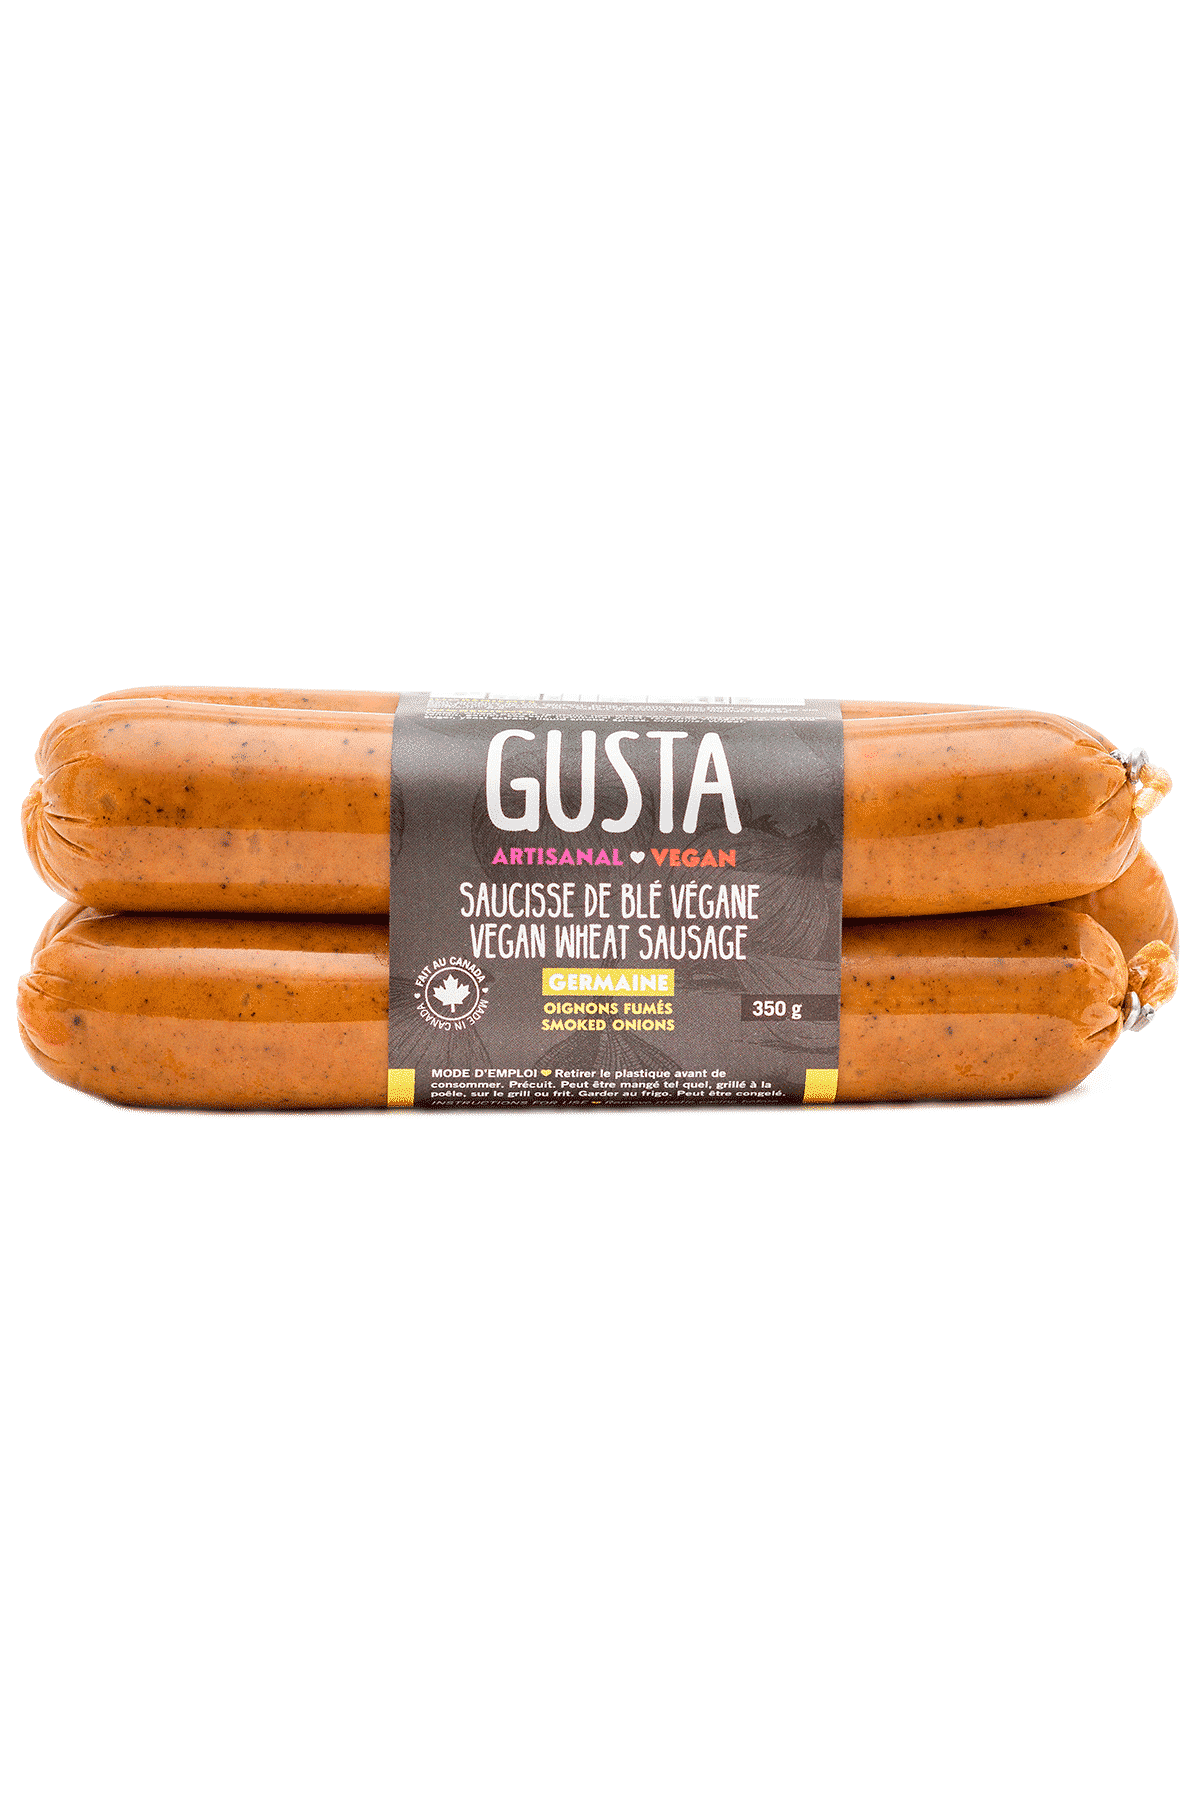 Gusta Vegan Wheat Sausage - Germaine 350g